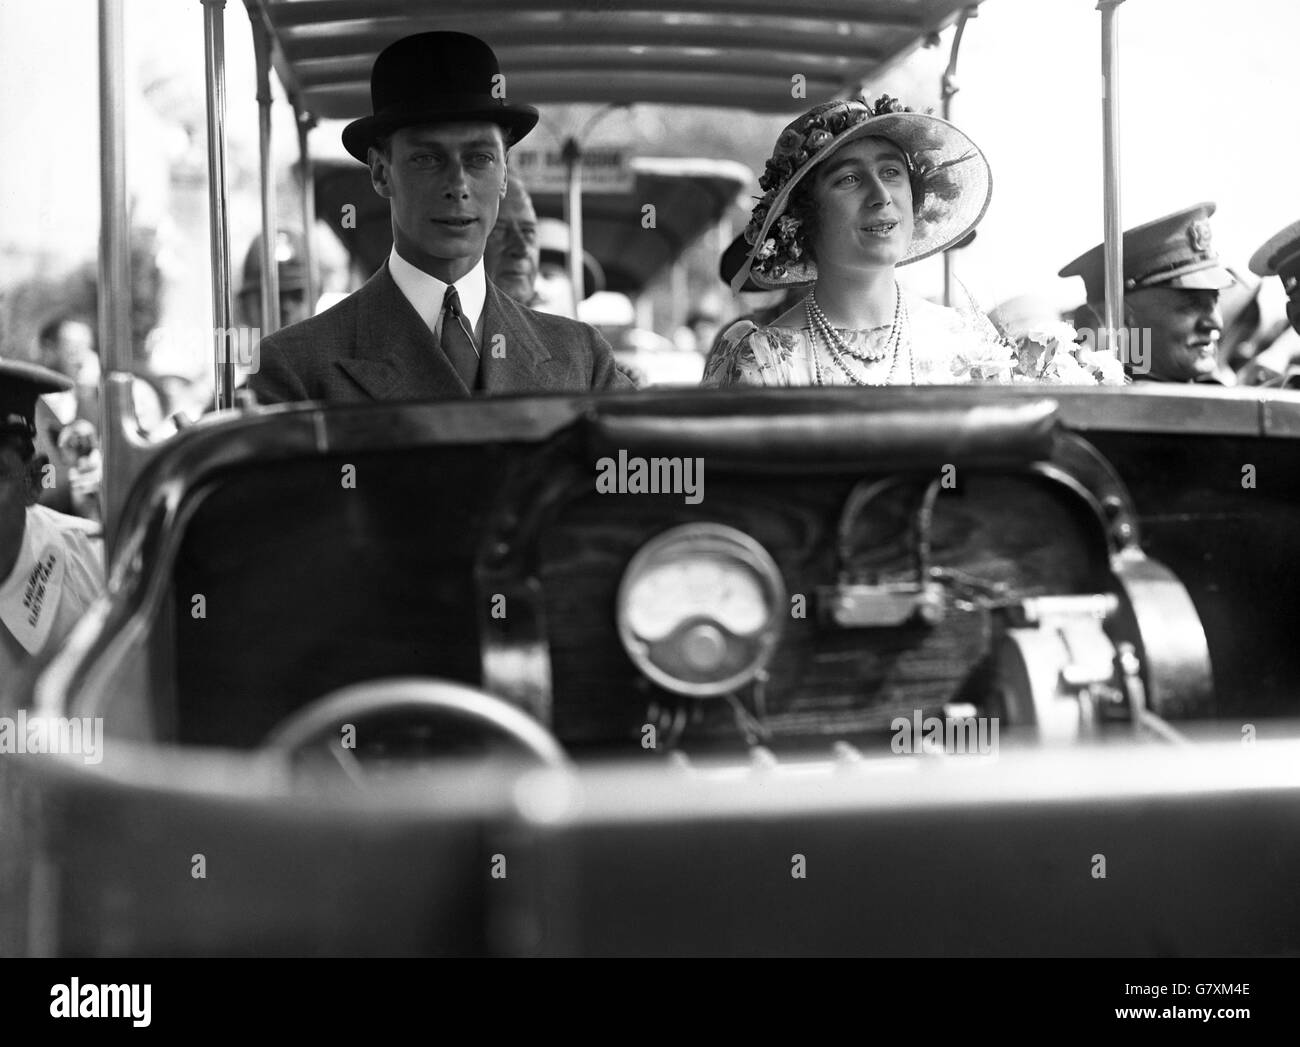 Le duc et la duchesse de York dans une voiture de chemin de fer lors d'une visite à Wembley, où ils ont adressé 10,000 enfants des écoles élémentaires de Londres. Banque D'Images